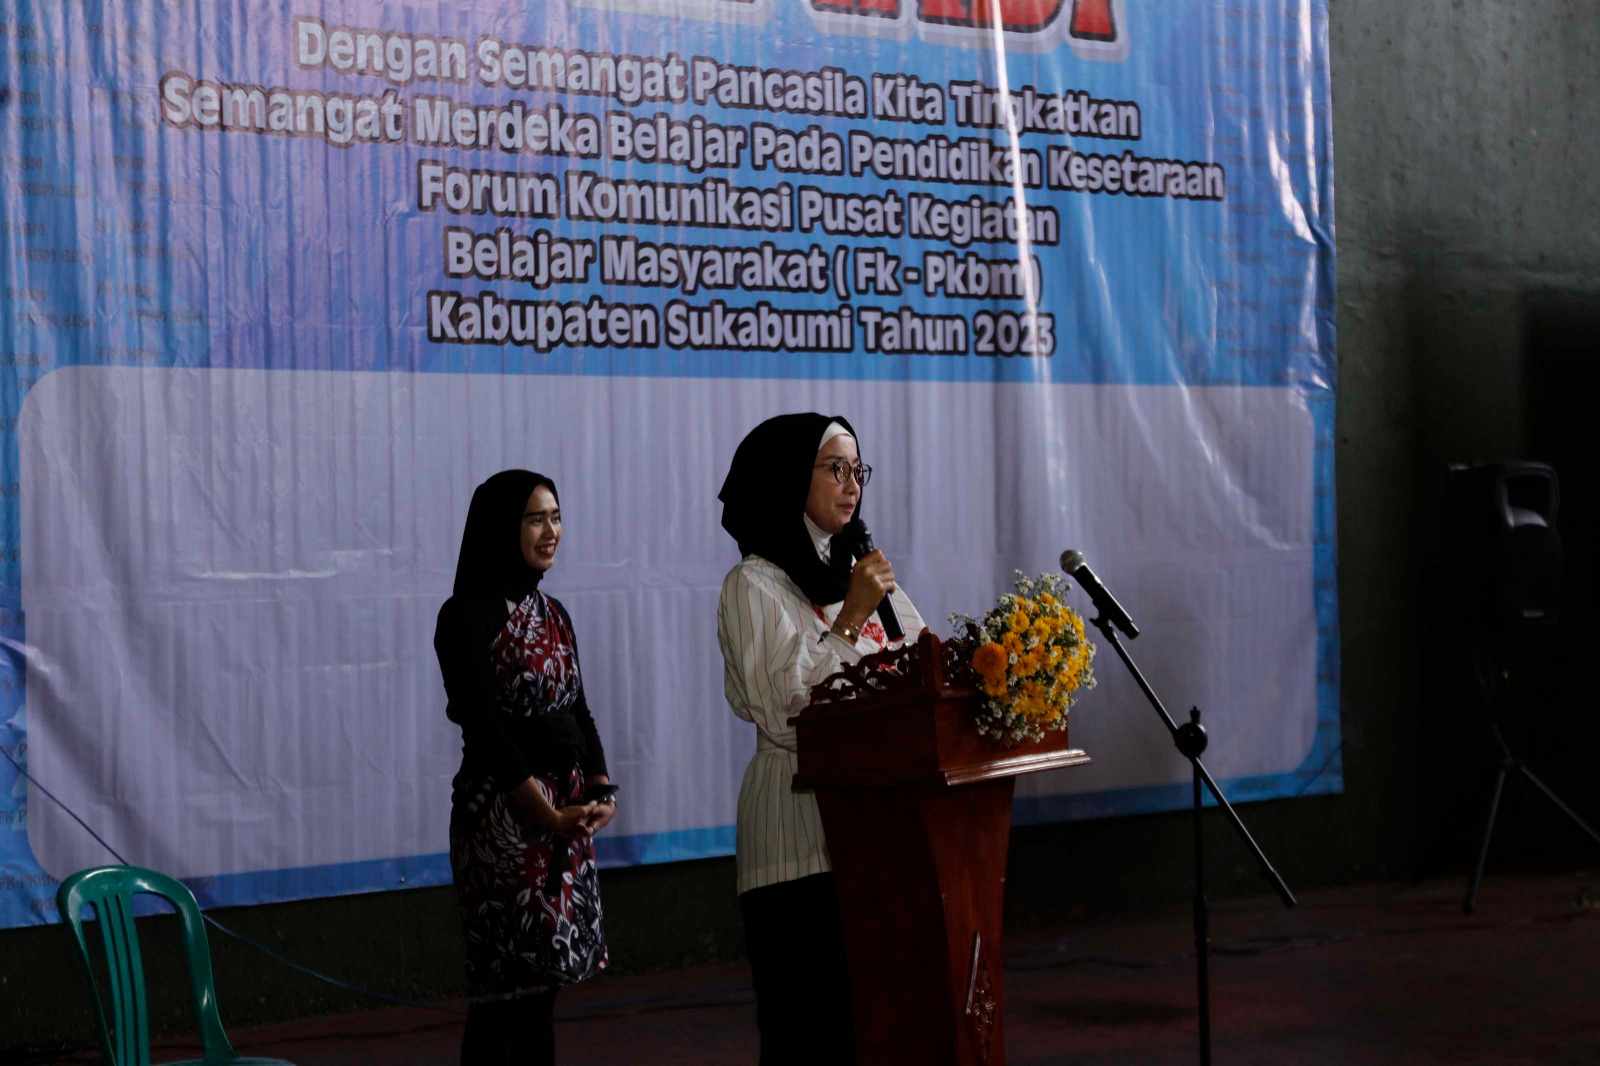 Teh Desy Apresiasi FK-PKBM Kab Sukabumi dalam Mendongkrak Kualitas Pendidikan Kesetaraan